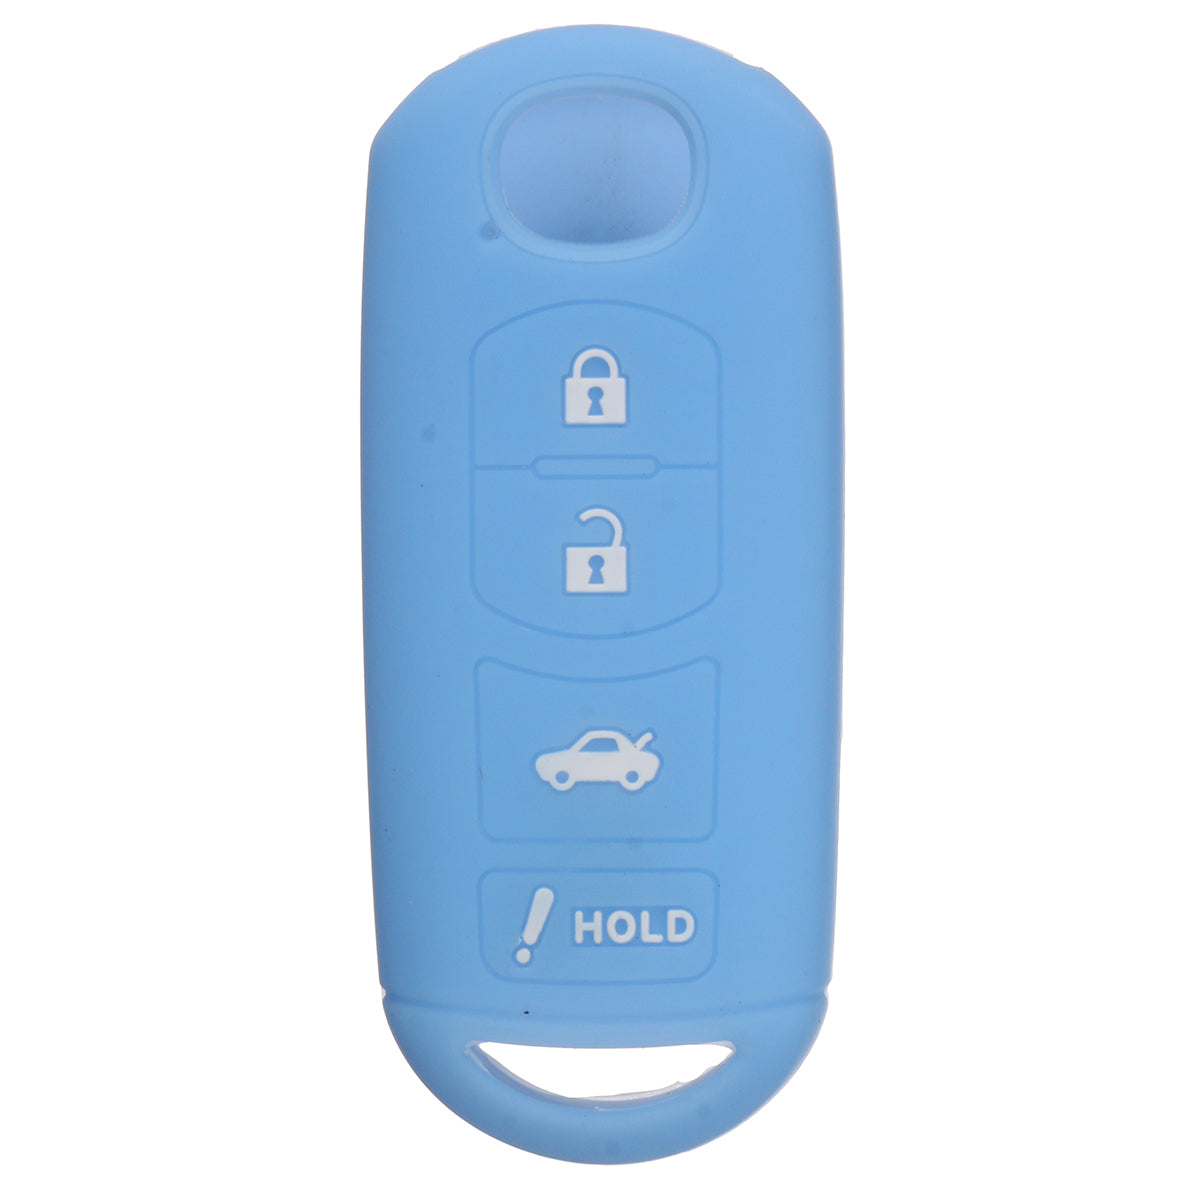 Cornflower Blue 4 Button Remote Key Cover Case Shell Easy Installation For MAZDA 3 6 MX5 CX-5 CX-7 CX-9